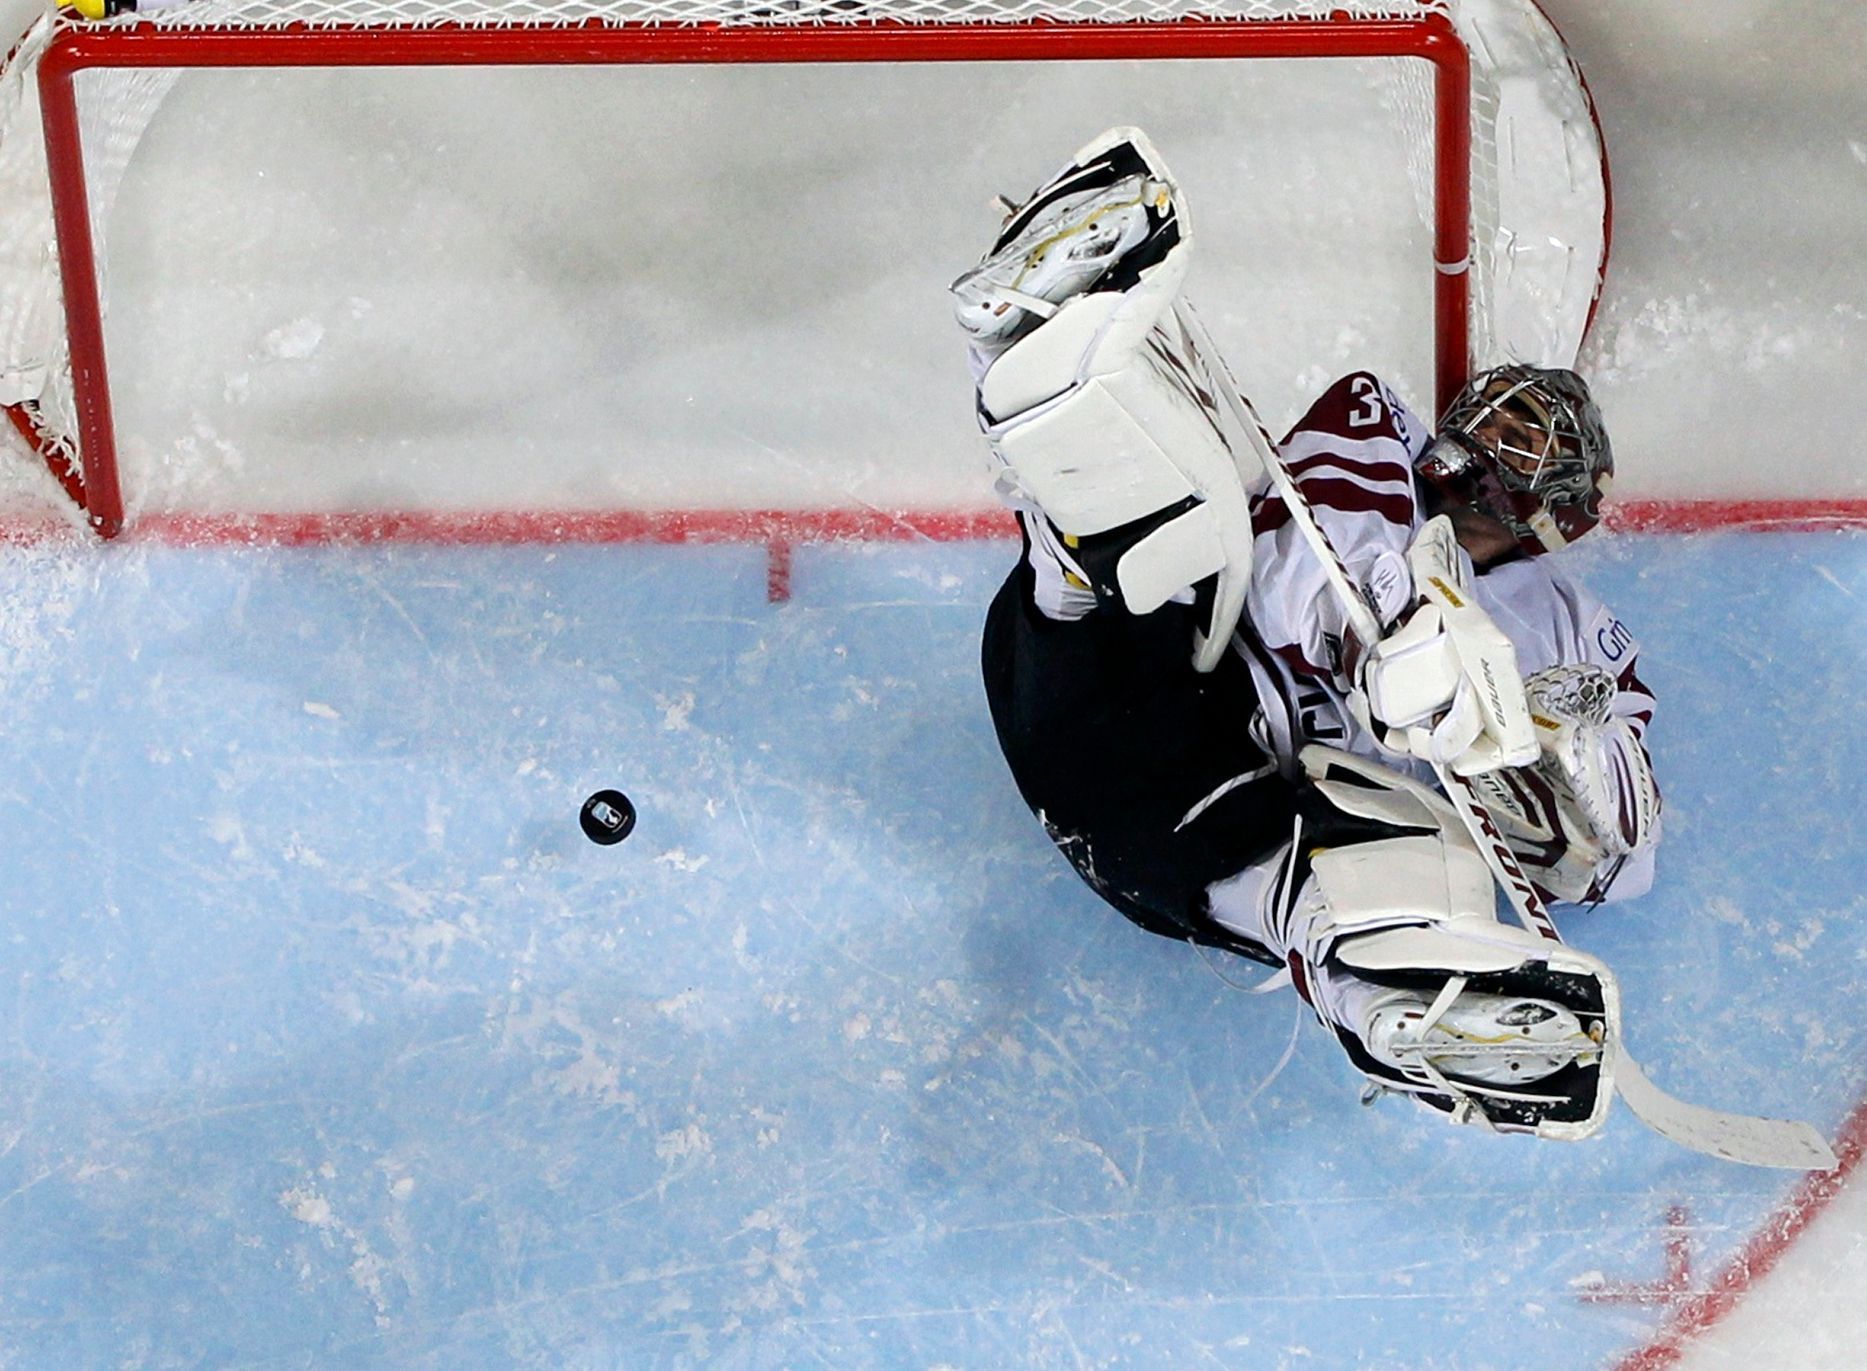 MS v hokeji 2013, Rusko - Lotyšsko: Edgars Masalskis dostává gól